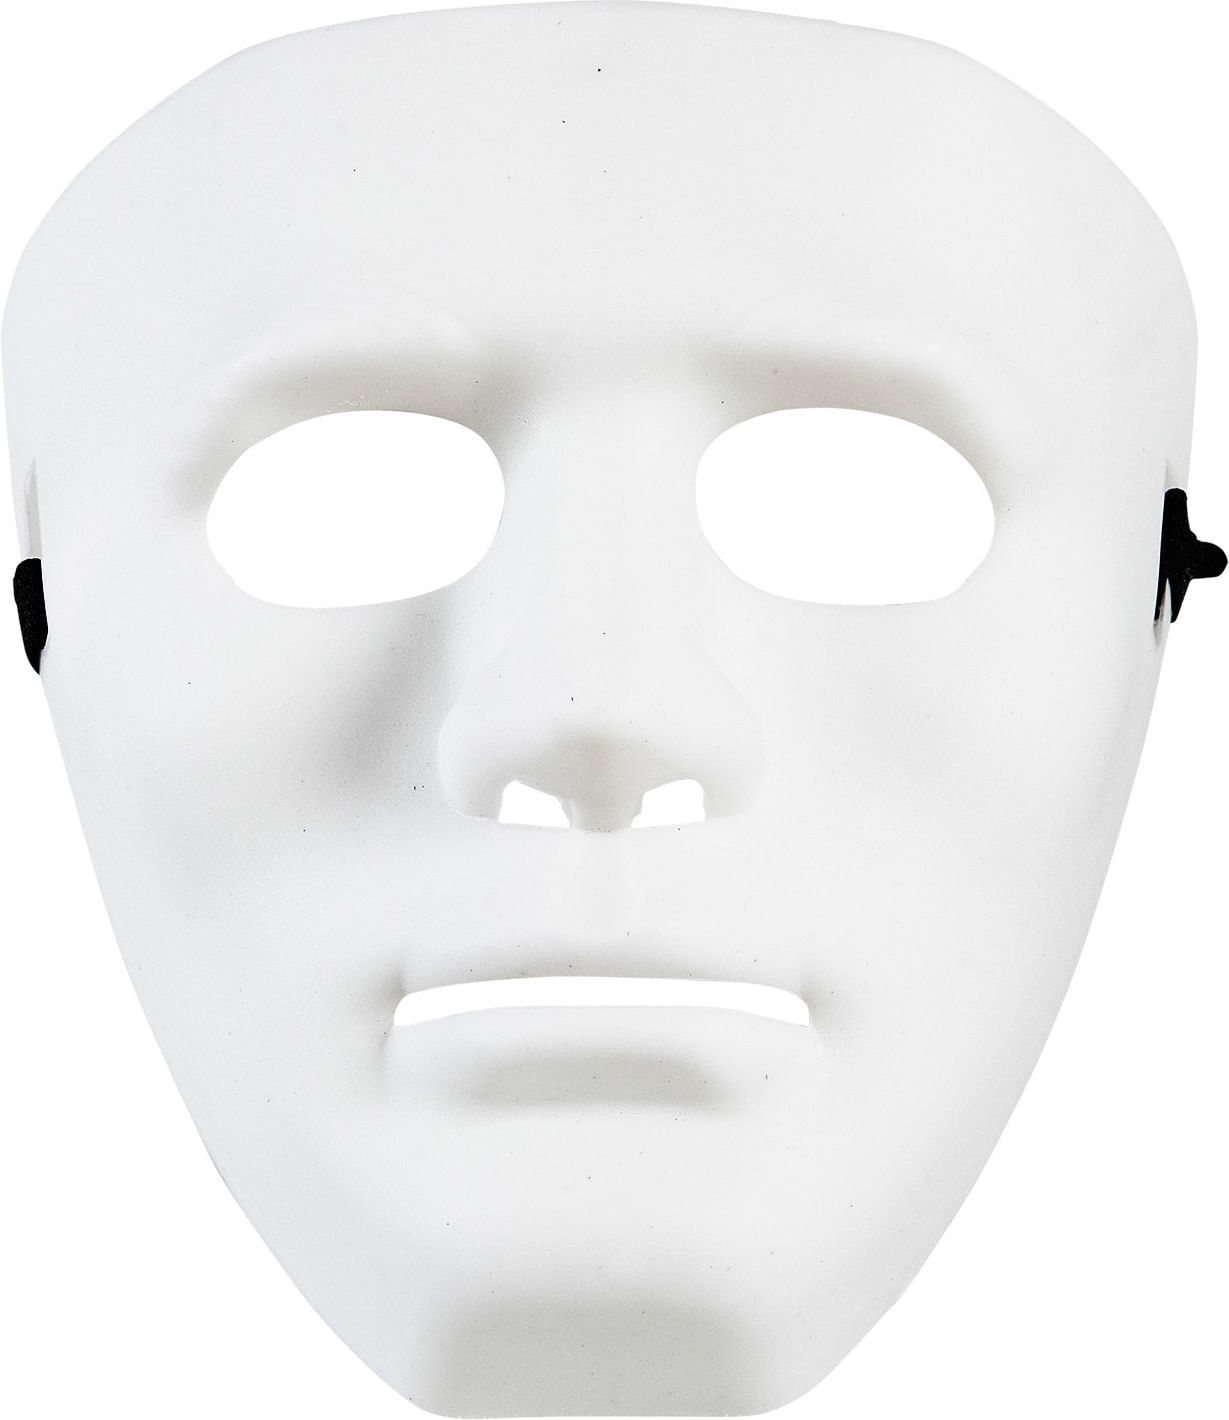 Wit anoniem masker